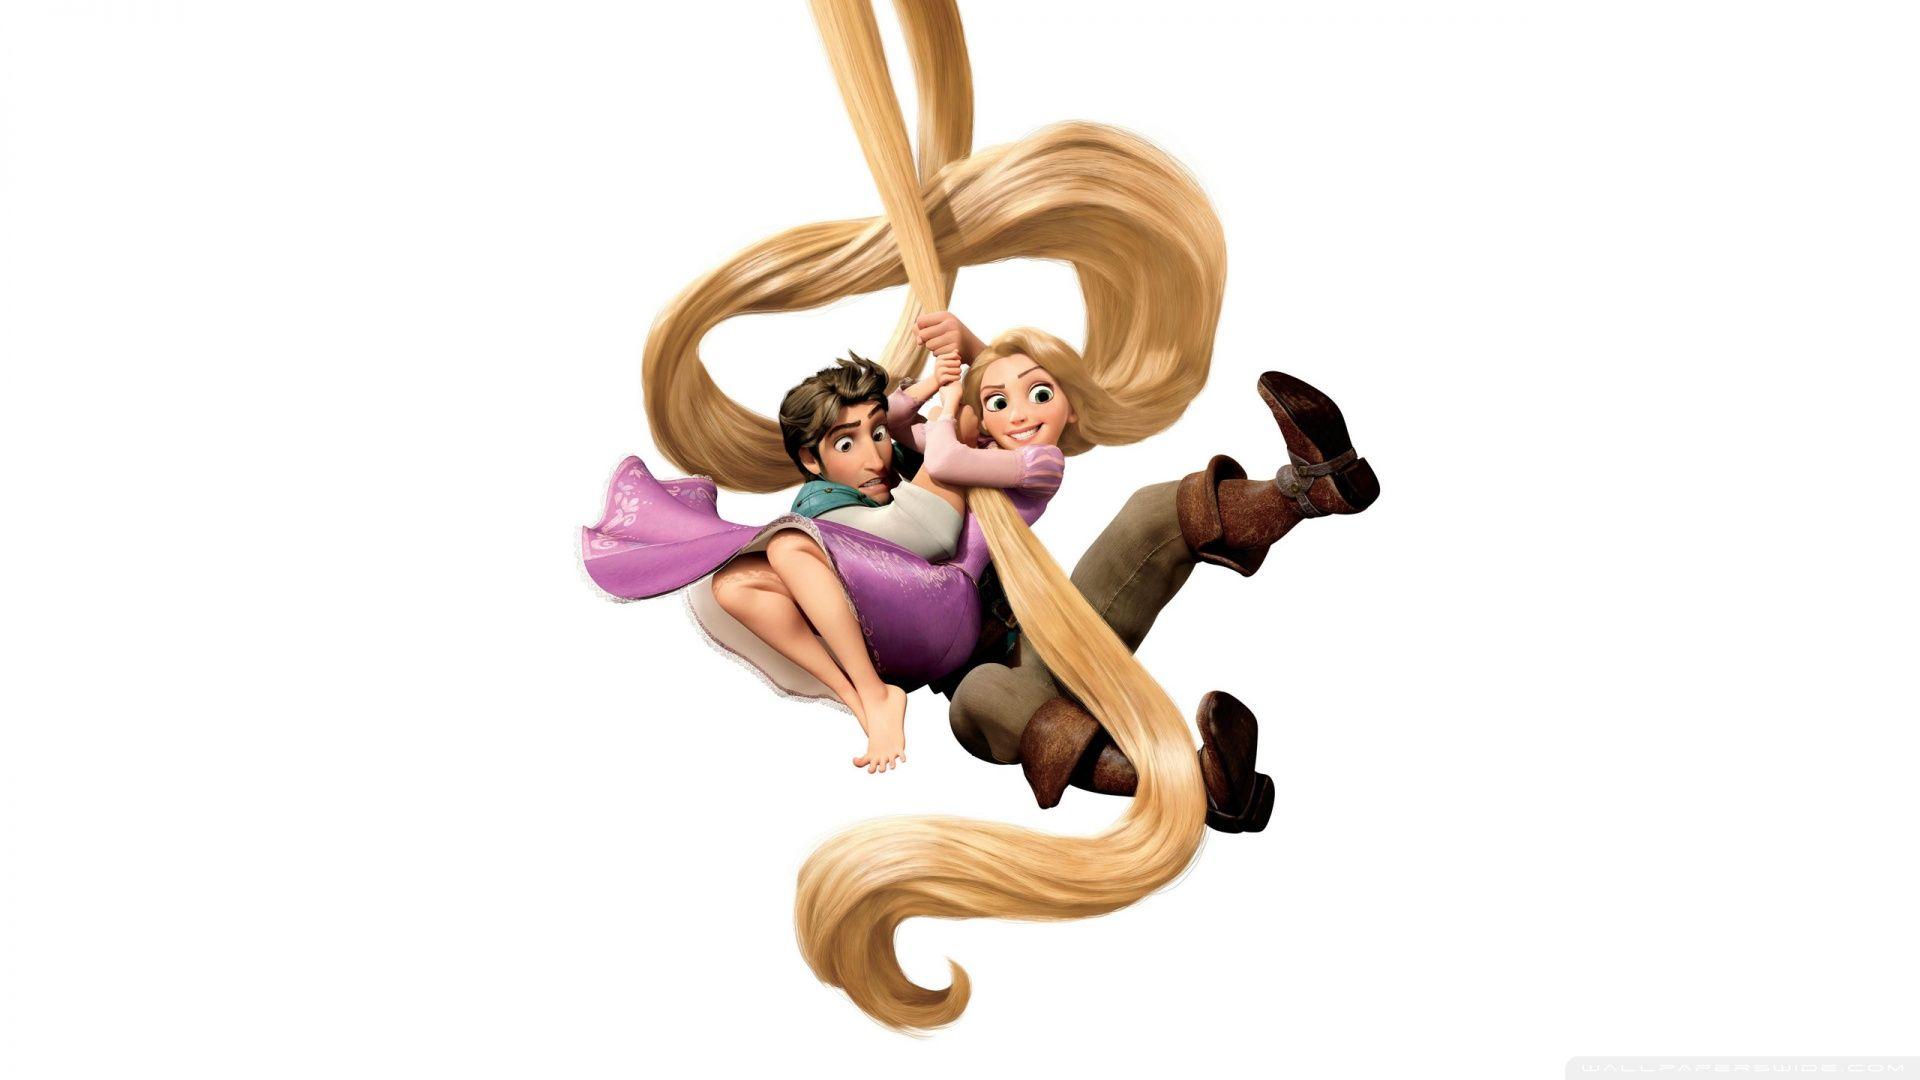 Tangled Rapunzel And Flynn Ryder ❤ 4K HD Desktop Wallpaper for 4K